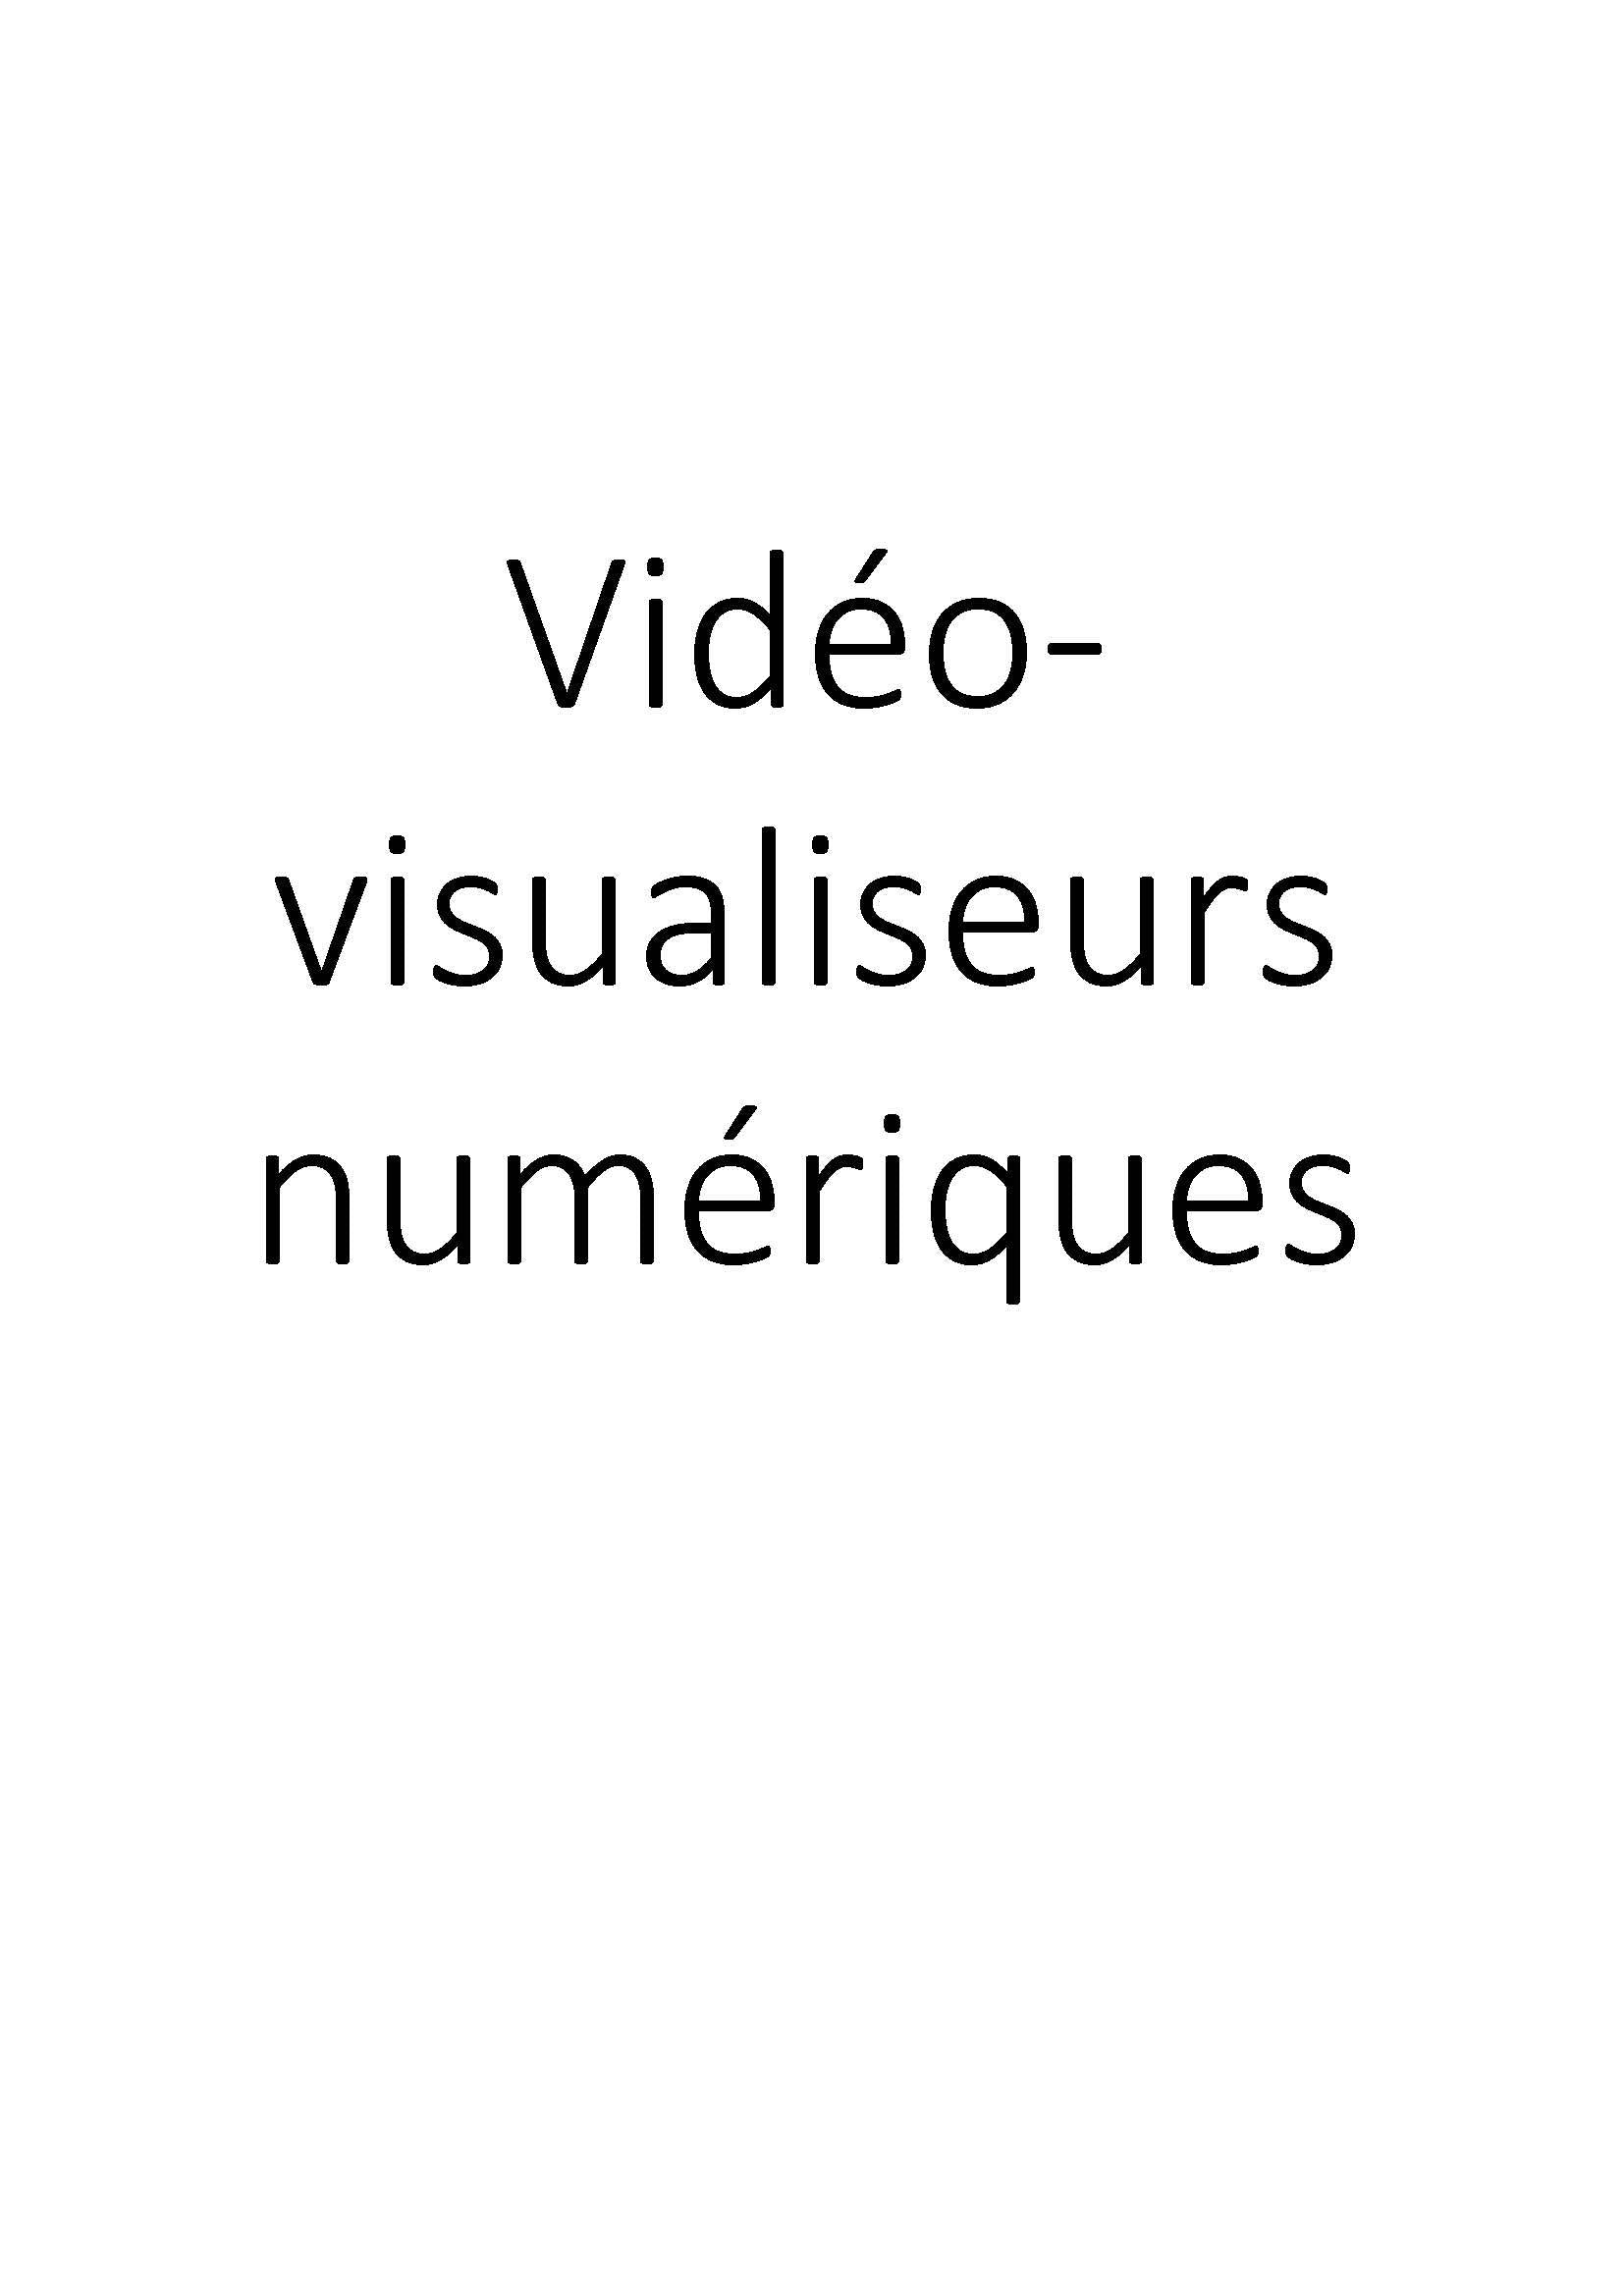 Vidéo-visualiseurs numériques clicktofournisseur.com